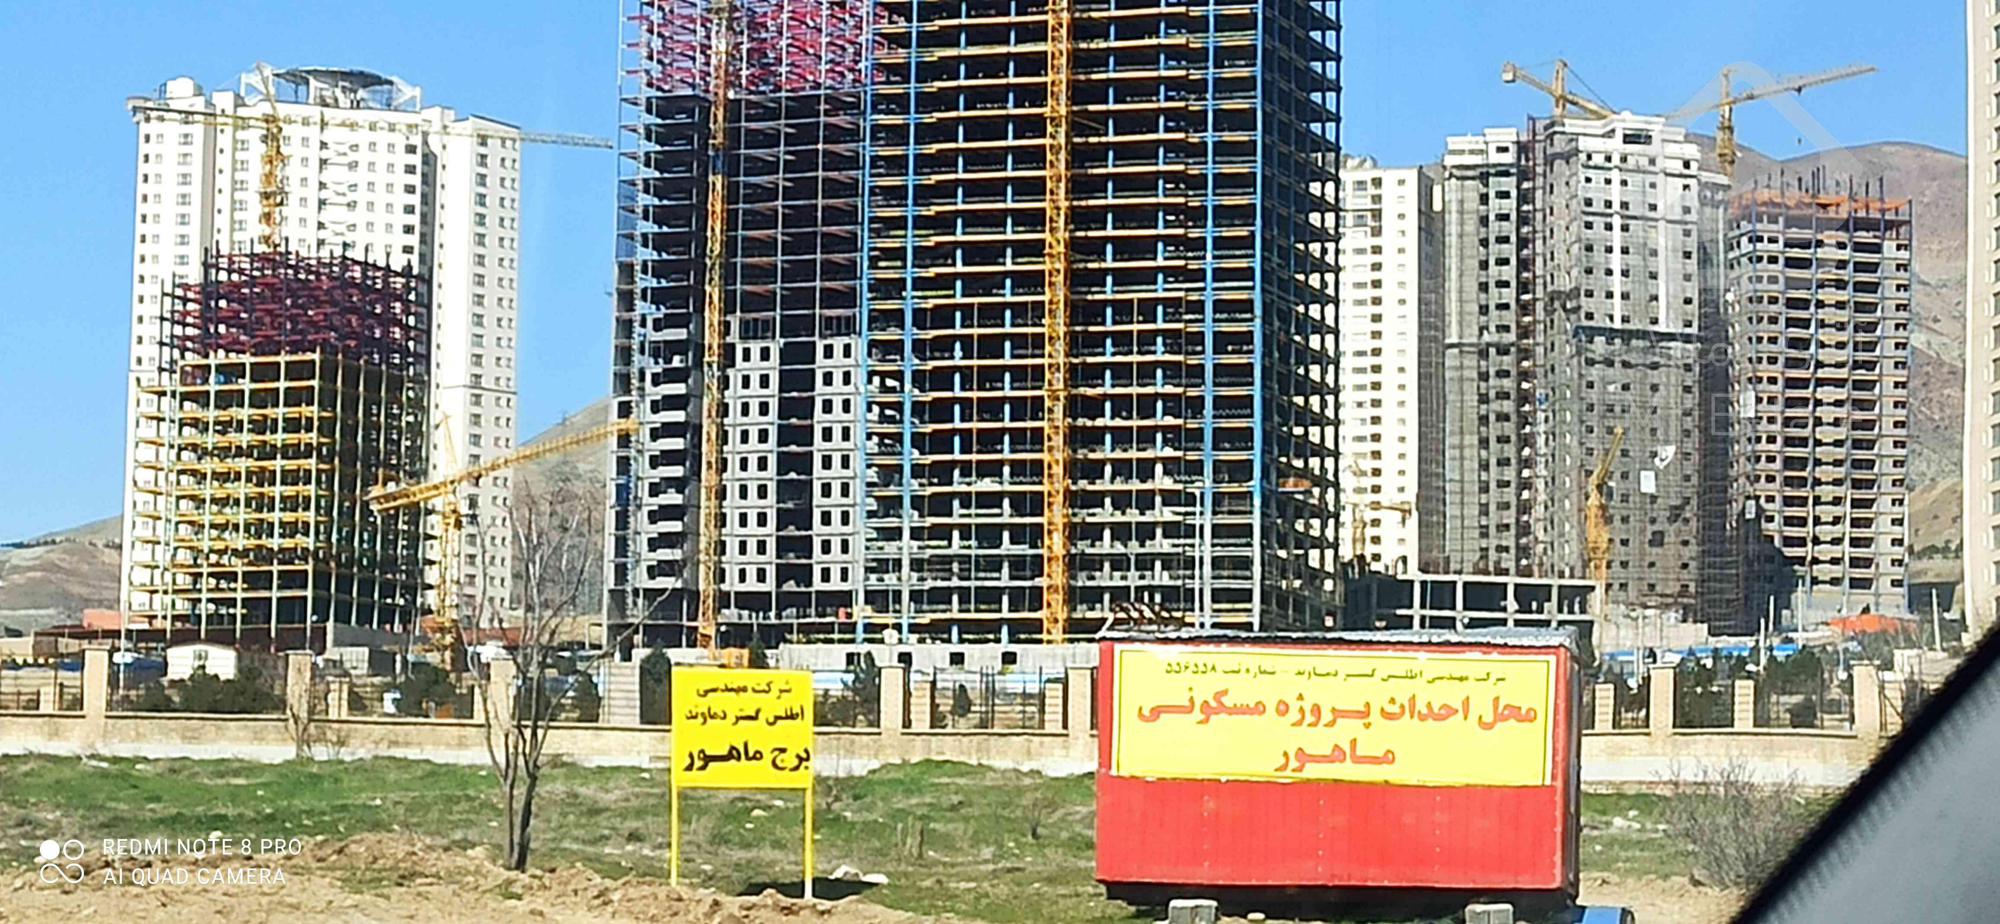 پیش فروش آپارتمان کوهستانی ماهور در منطقه 22 تهران